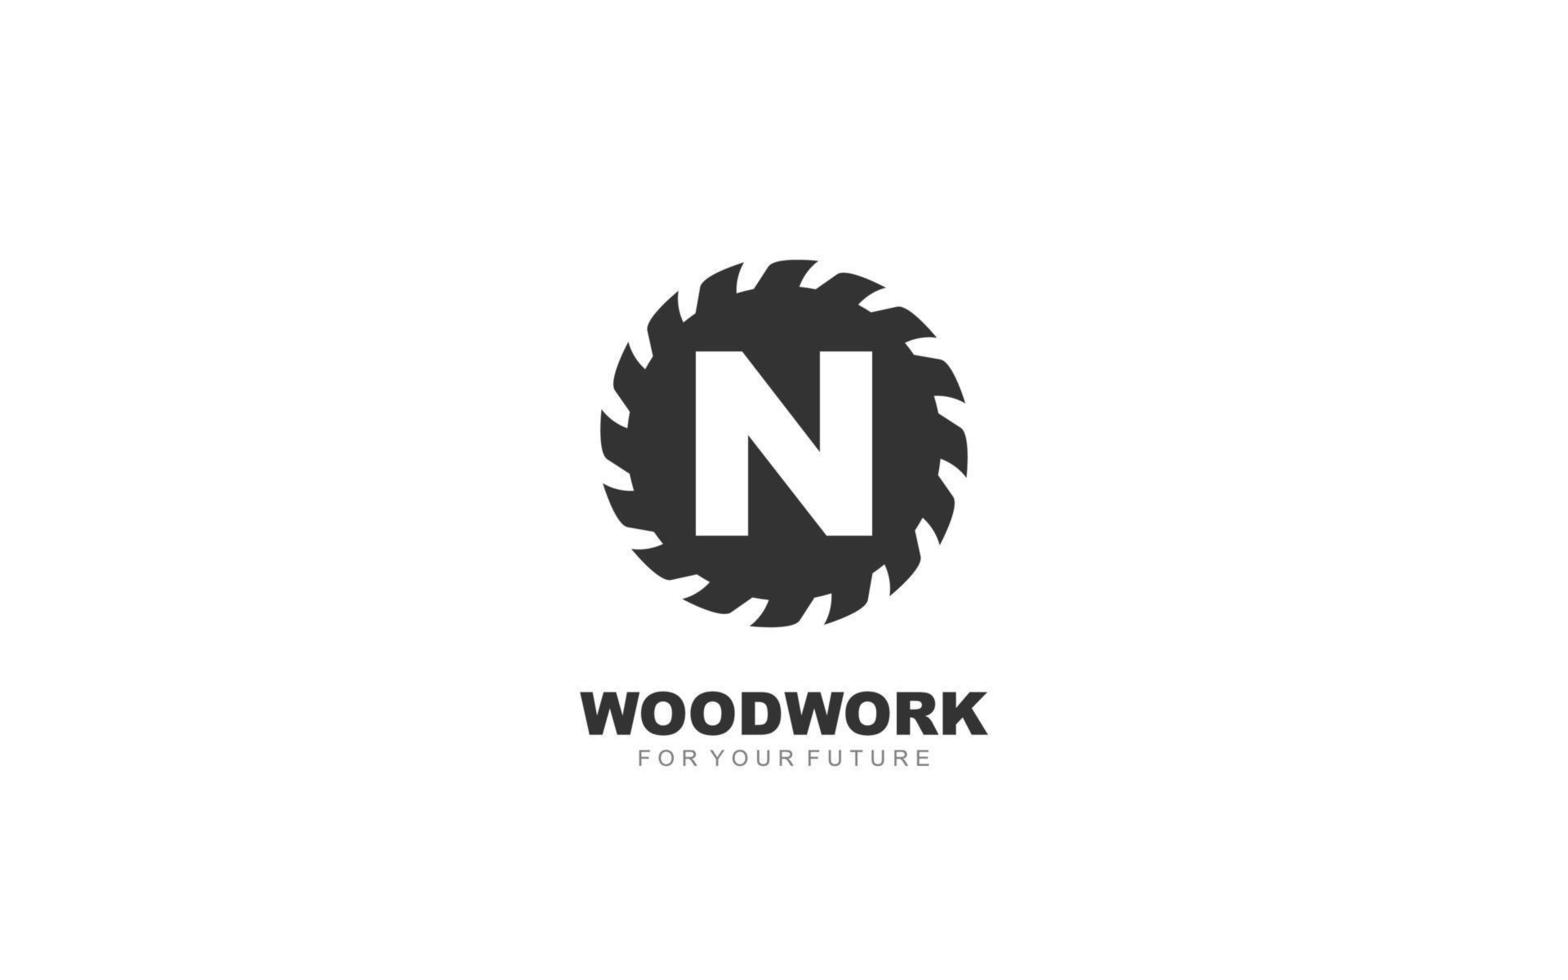 n logo zagerij vector voor houtbewerking bedrijf. eerste brief timmerwerk sjabloon vector illustratie voor uw merk.